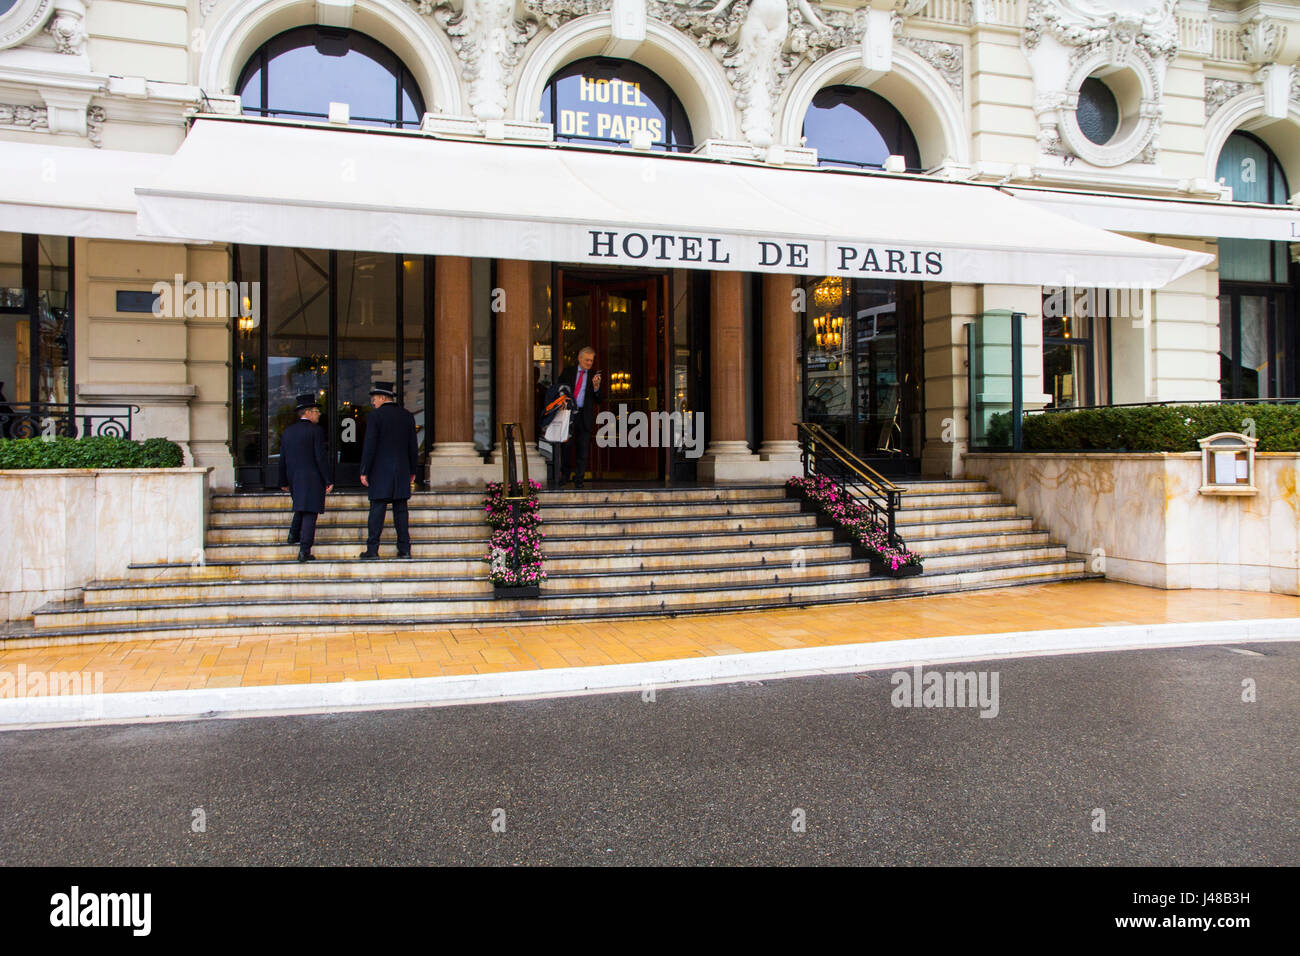 Hotel de Paris Monaco Monte Carlo ist das berühmteste Hotel der Luxusklasse. Das 99-Zimmer Hotel wurde in Filmen empfohlene und rühmt sich mit einem Michelin-Stern ausgezeichnete Restaurants. Stockfoto